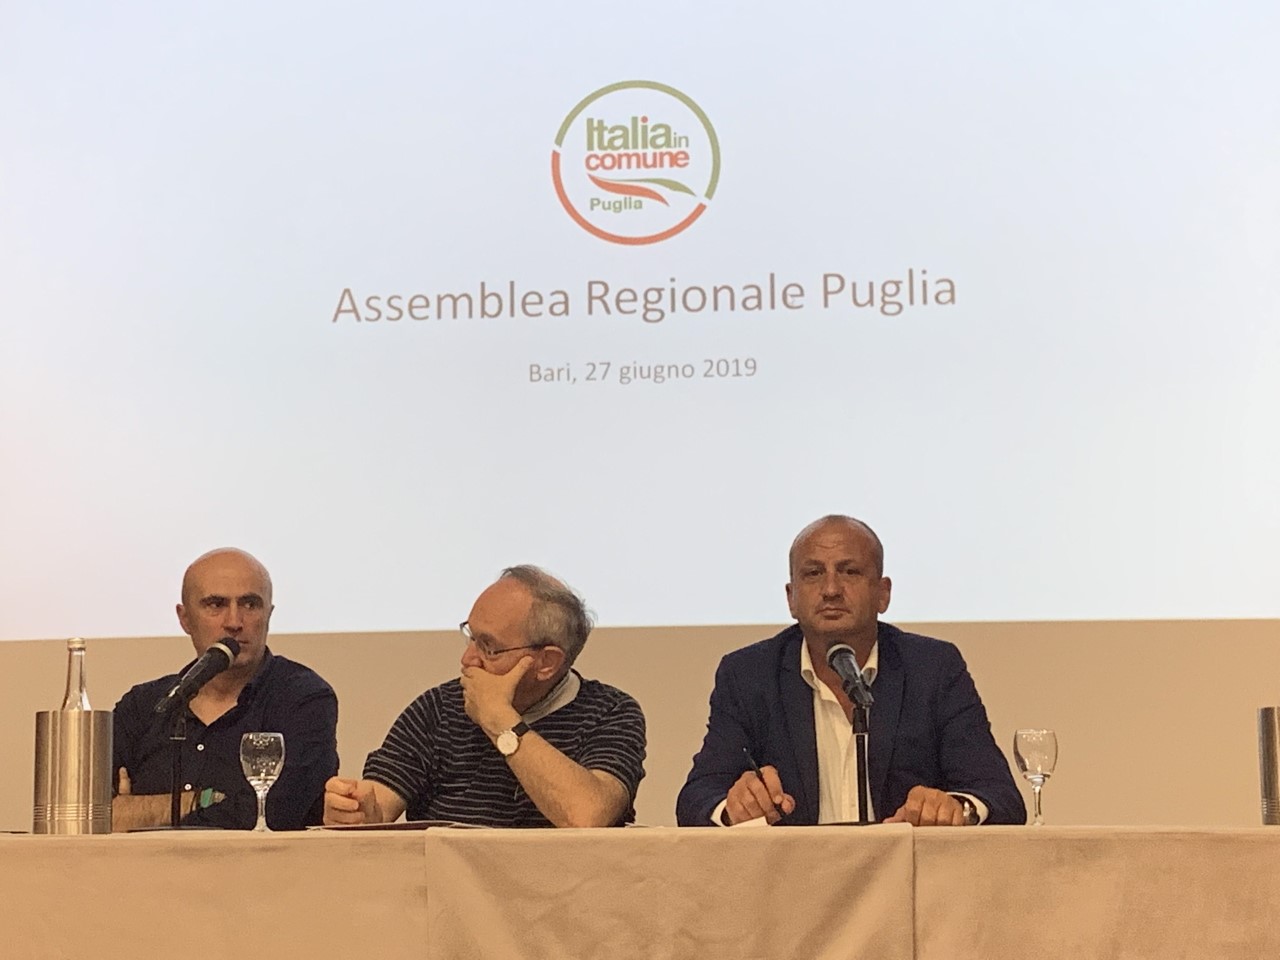 Itc Puglia: archiviate le europee, già pronti per le regionali 2020. Appena conclusa l’Assemblea Regionale per l’analisi del voto